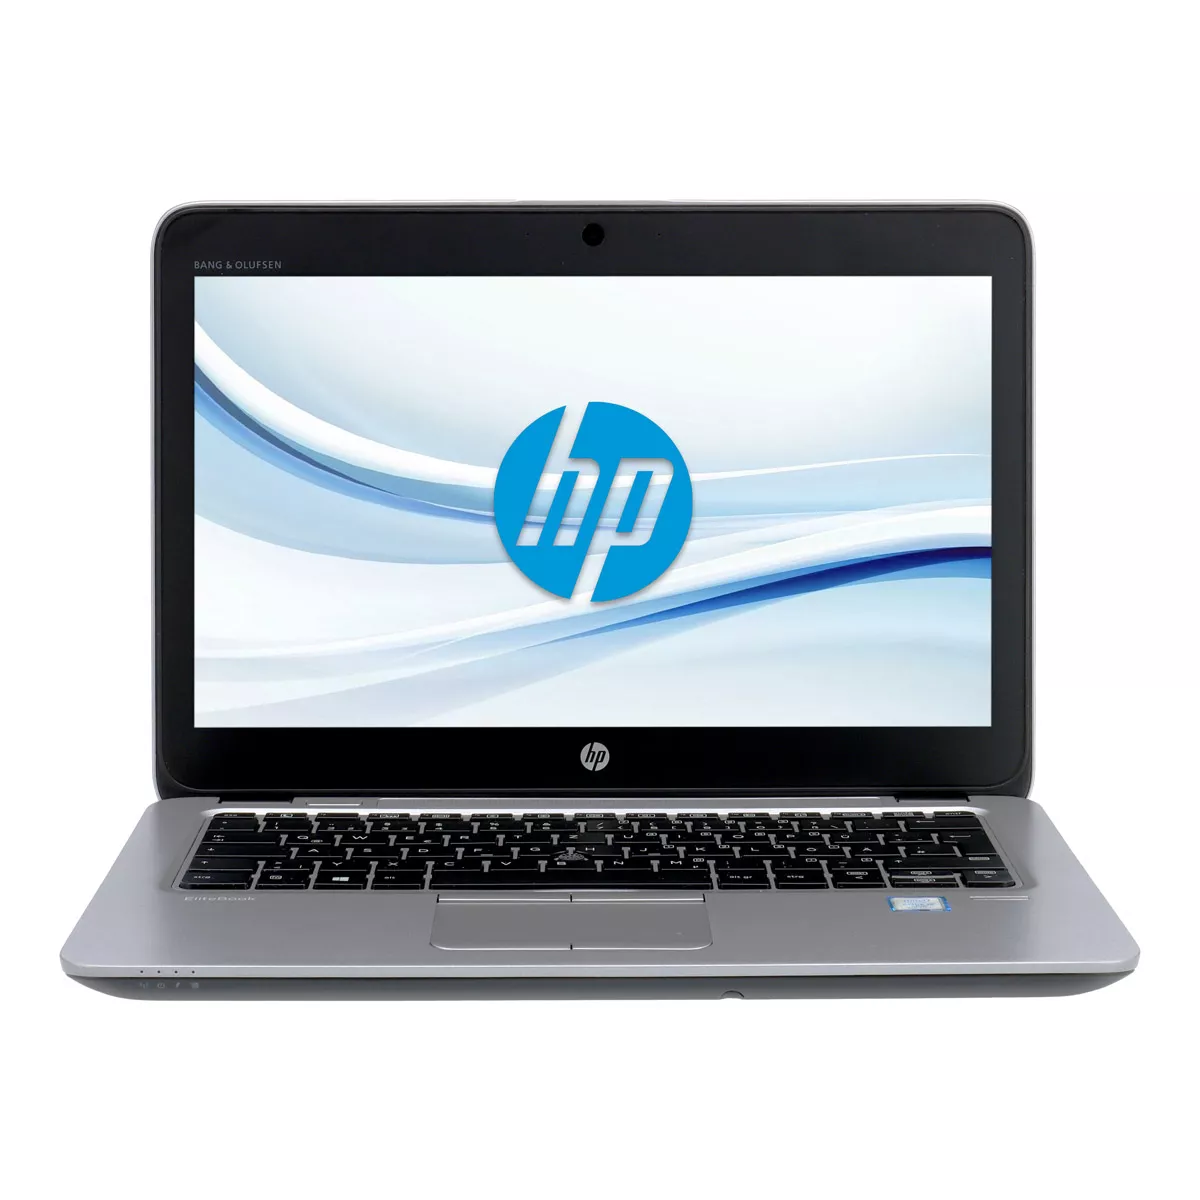 HP EliteBook 820 G3 Core i5 6200U 8 GB 128 GB SSD Webcam A+